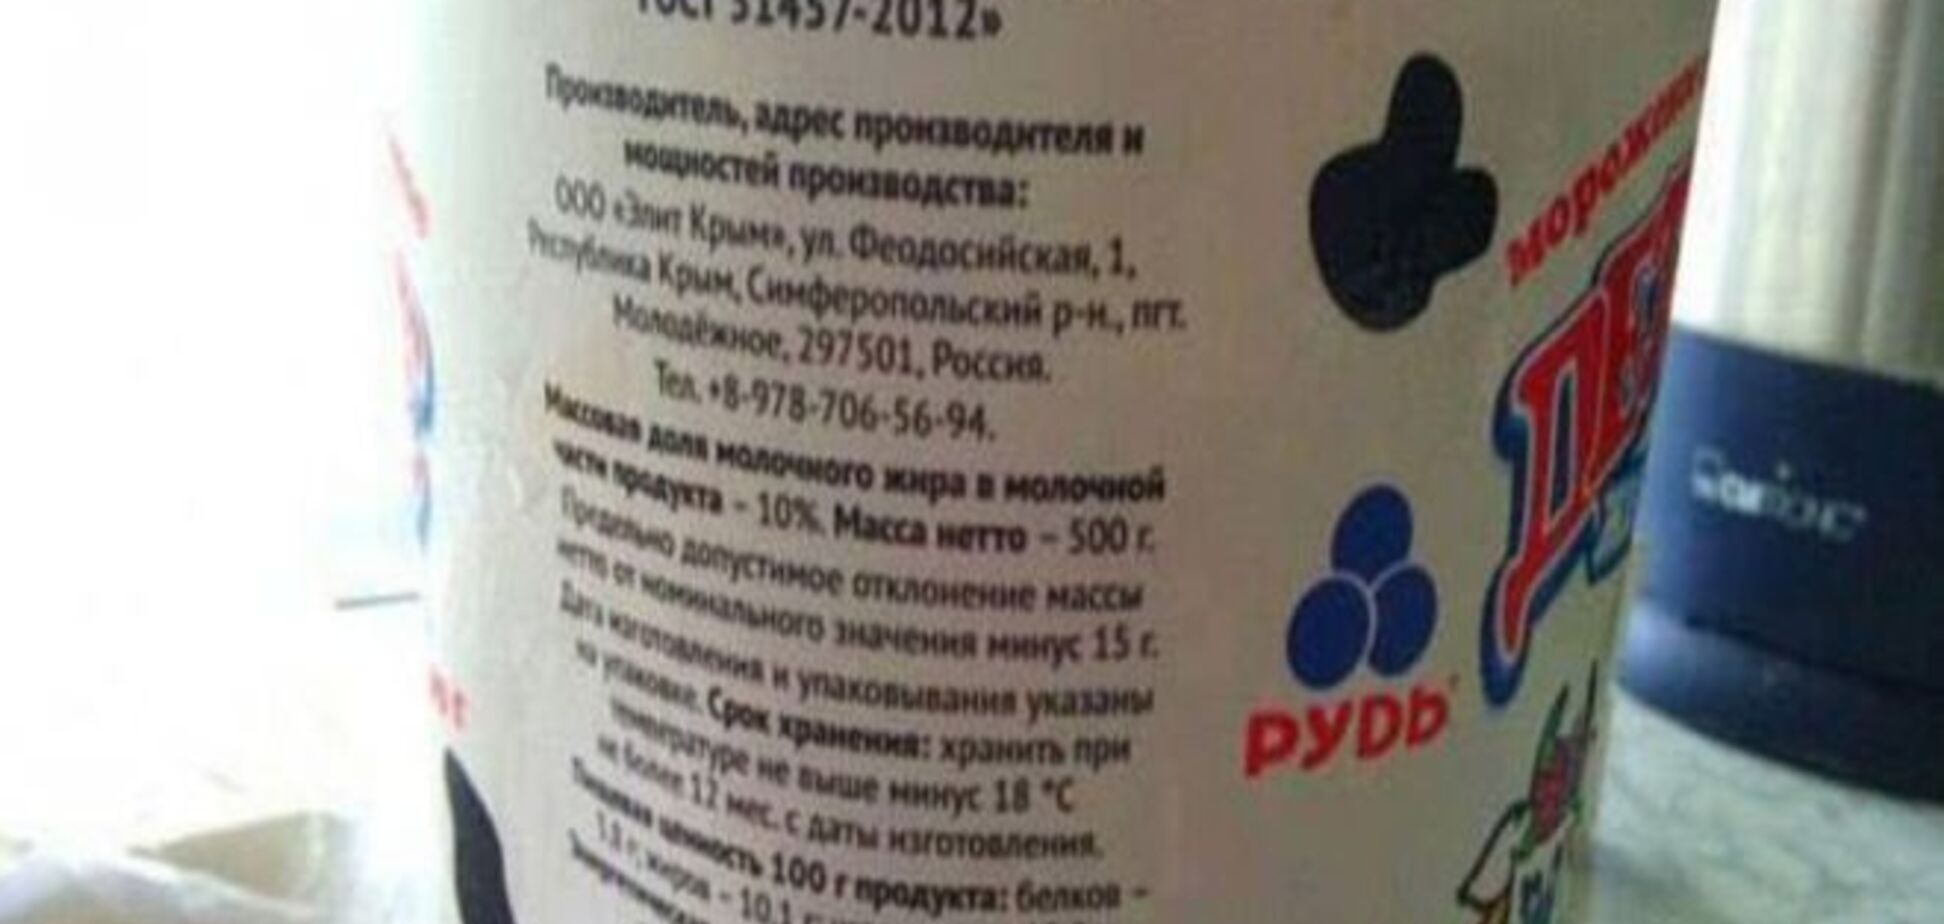 На упаковке украинского мороженного Крым признается российским. Фотофакт